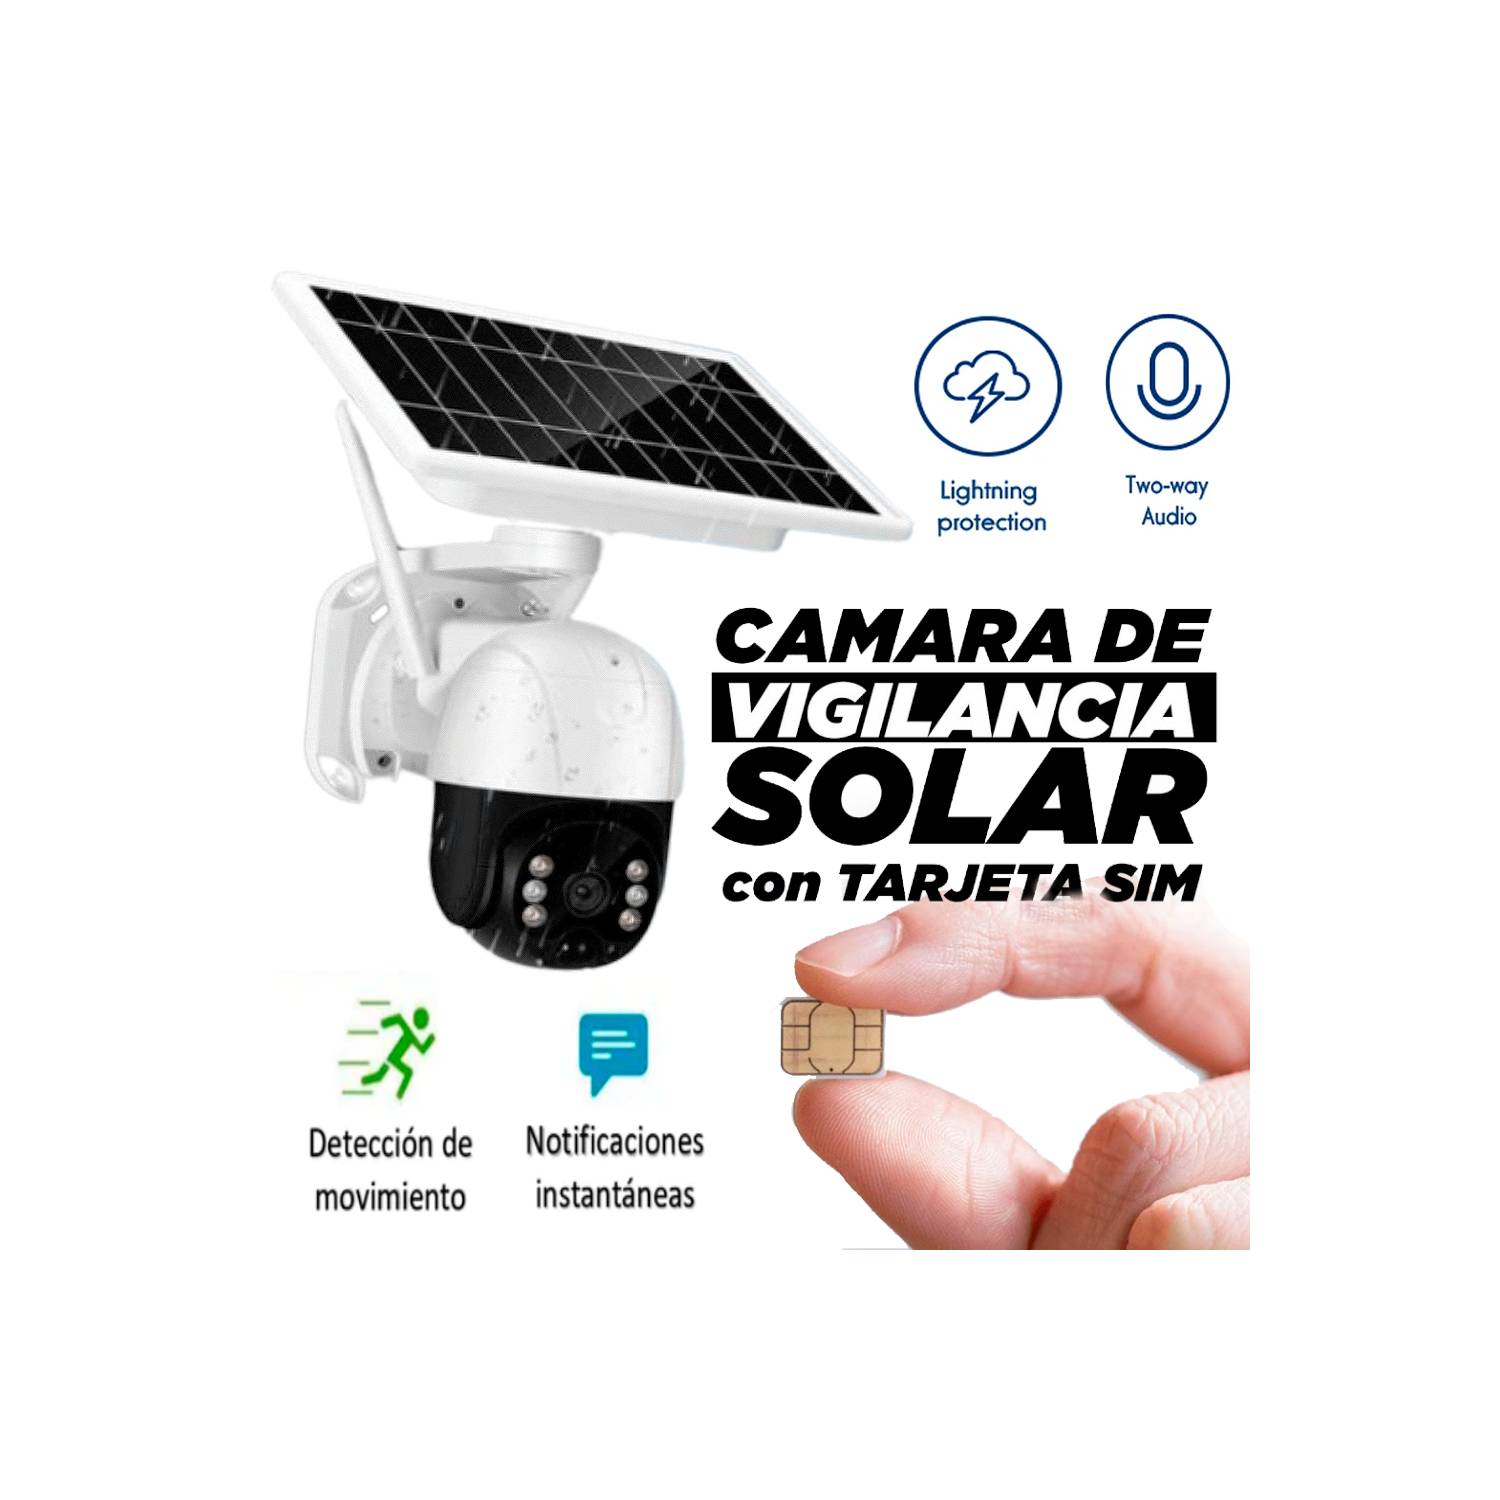 Camara solar 4g - Nicaragua